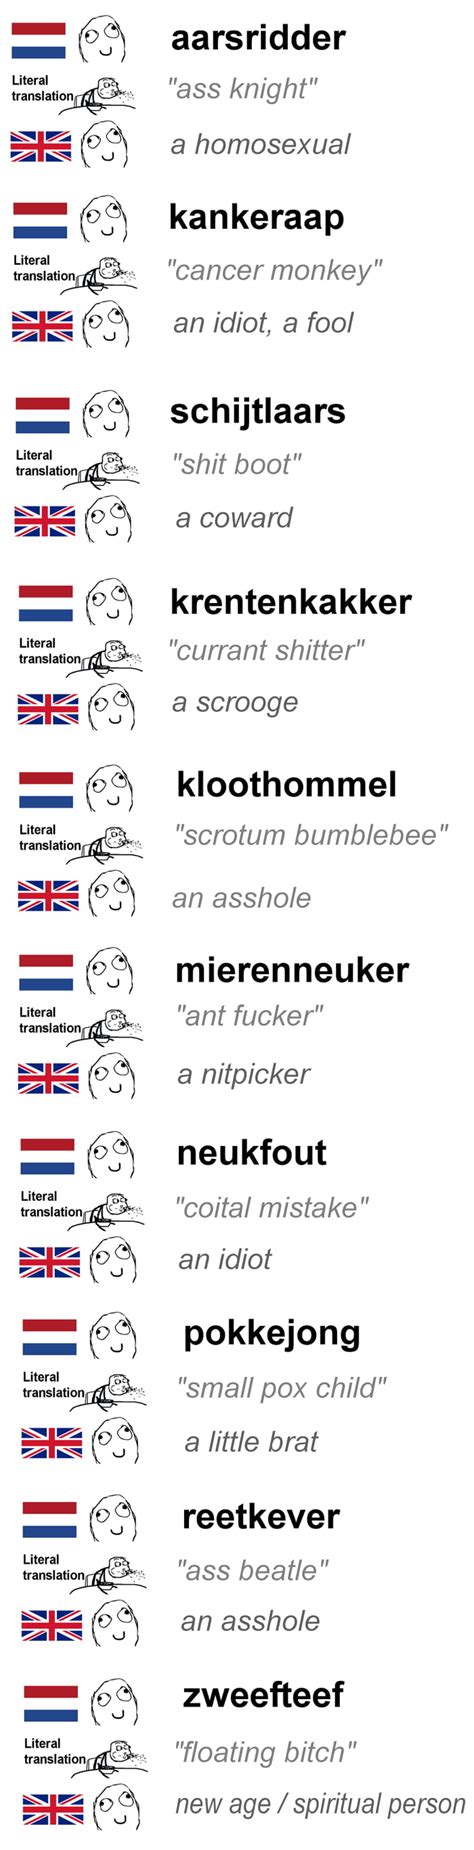 Dutch Swear Words Are Bizarre 9gag